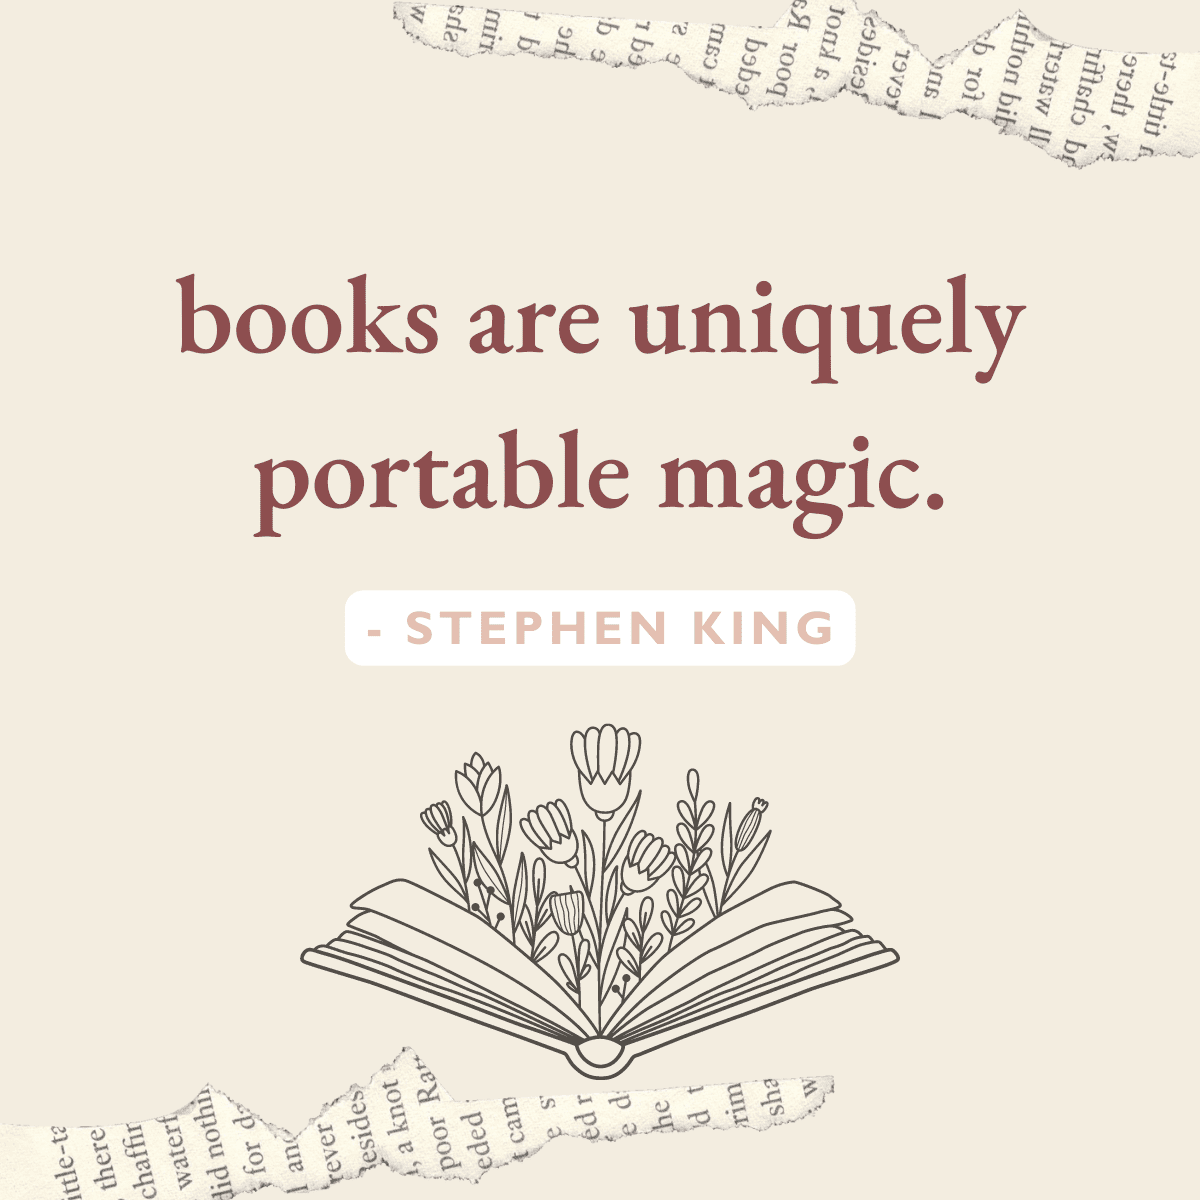 books are uniquely portable magic. - stephen king